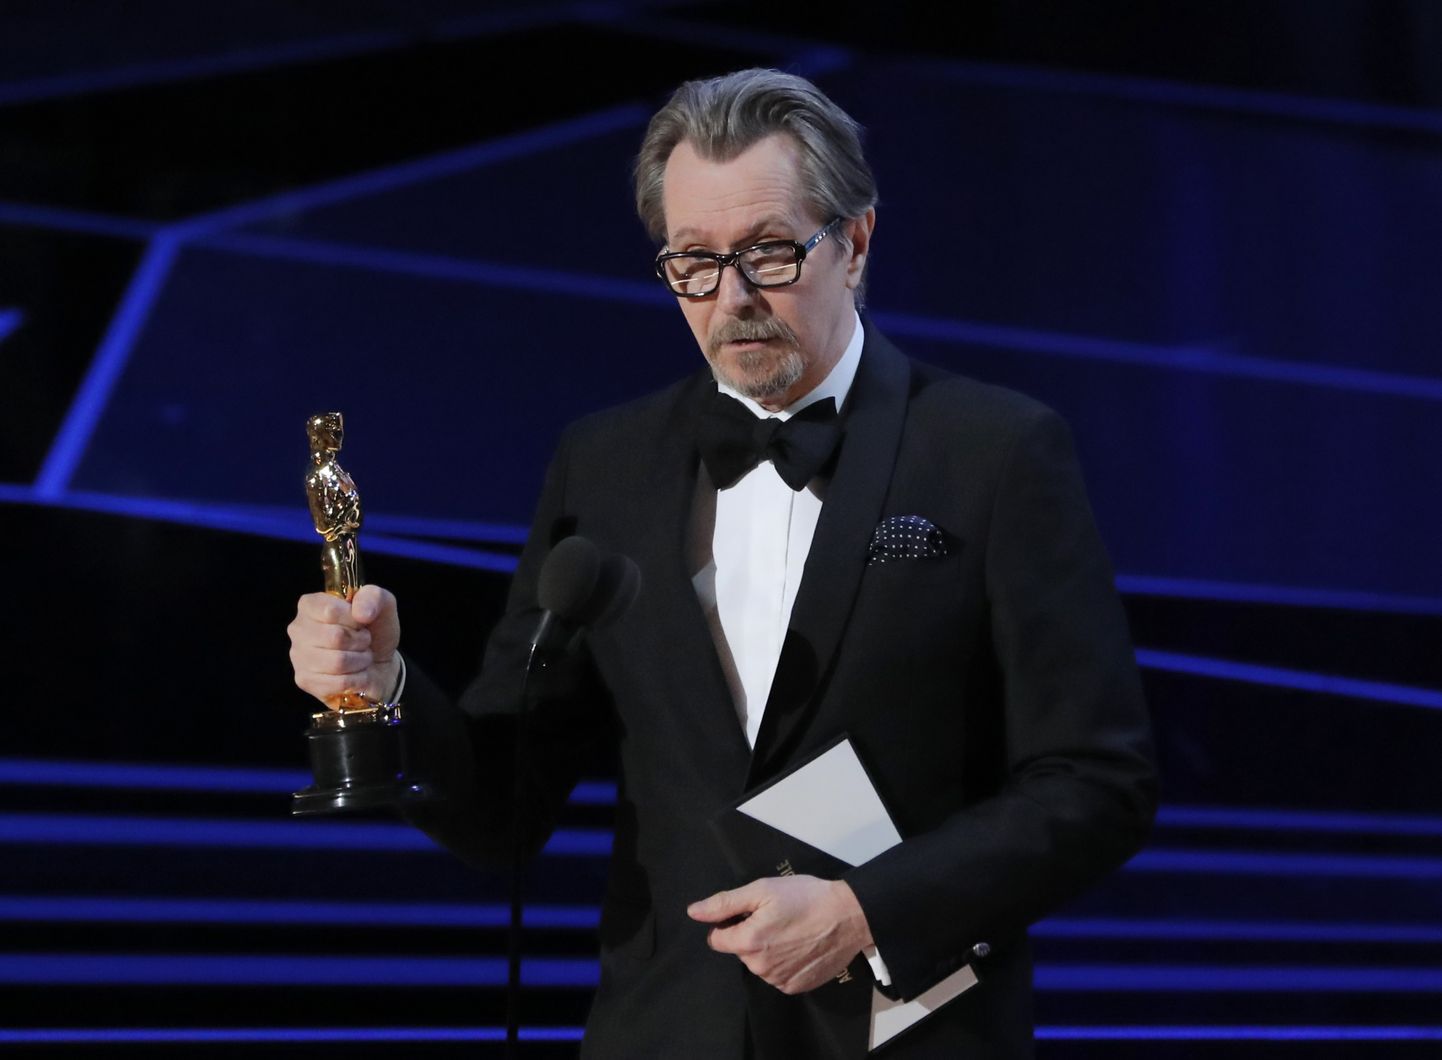 90th Academy Awards - Oscars Show - Hollywood, California, U.S., 04/03/2018 - Gary Oldman accepts the Oscar for Best Actor for "Darkest Hour." REUTERS/Lucas Jackson